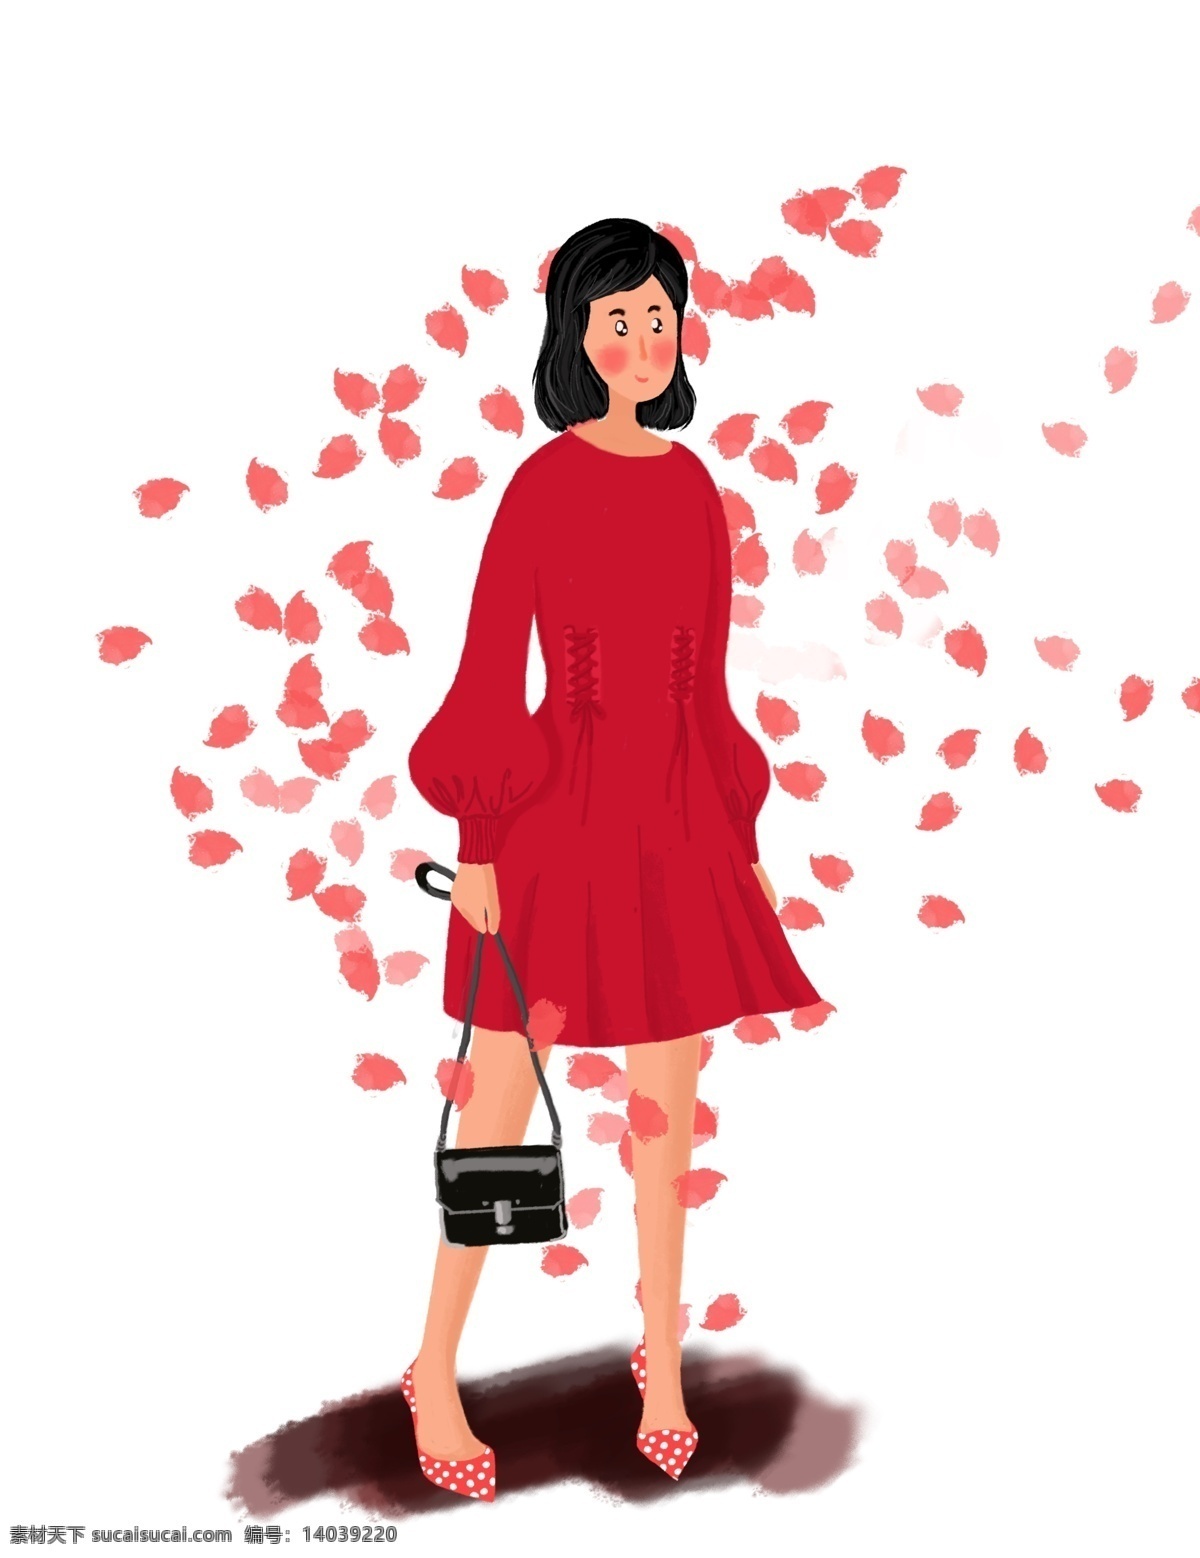 小红 裙 时尚 女孩 ol 职业 少女 分层 秋装 双十一 杂志 红裙 裙子 包包 短发 韩风 购物街